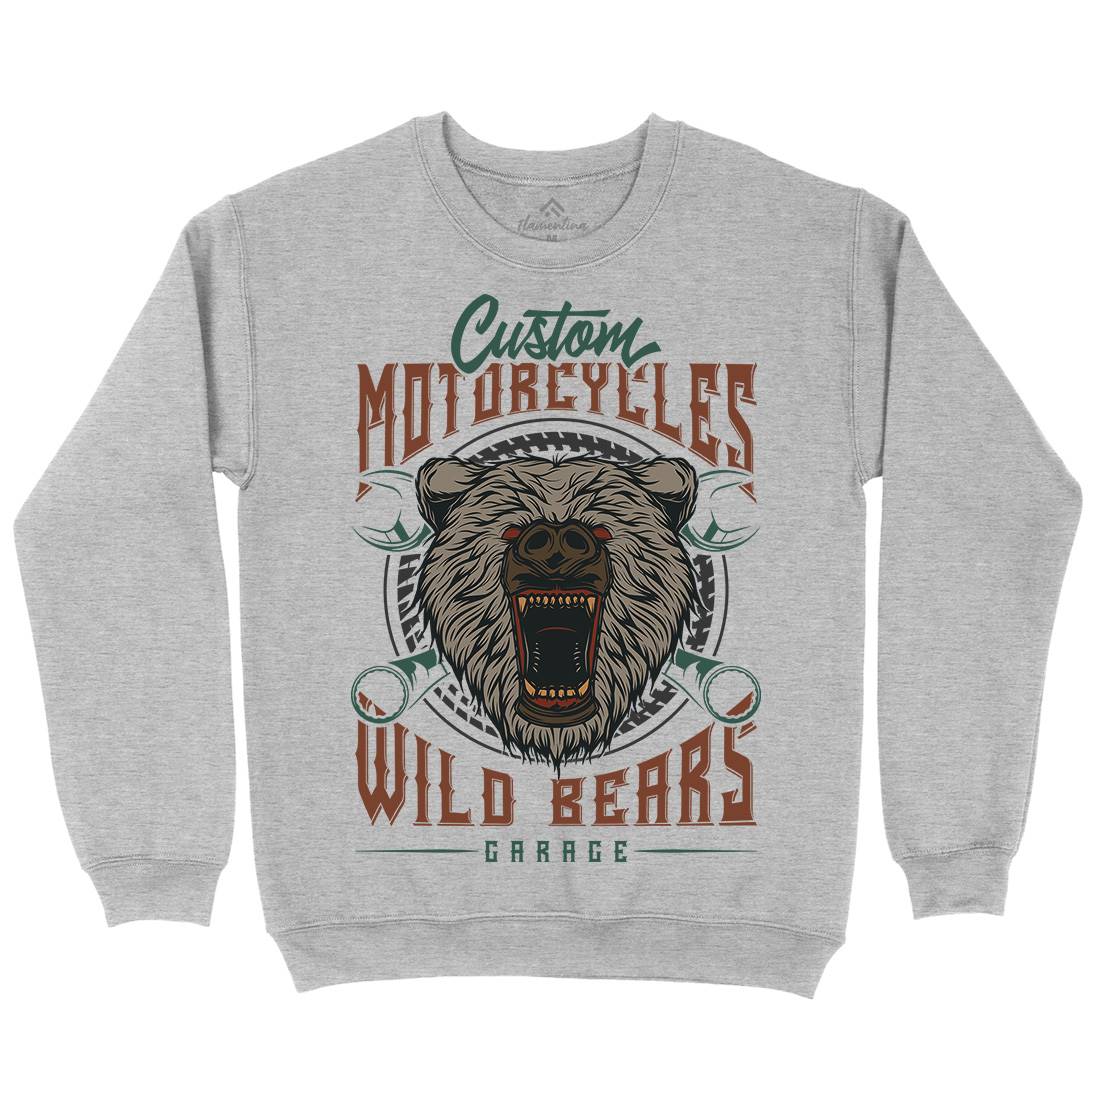 Wild Bears Kids Crew Neck Sweatshirt Motorcycles B788